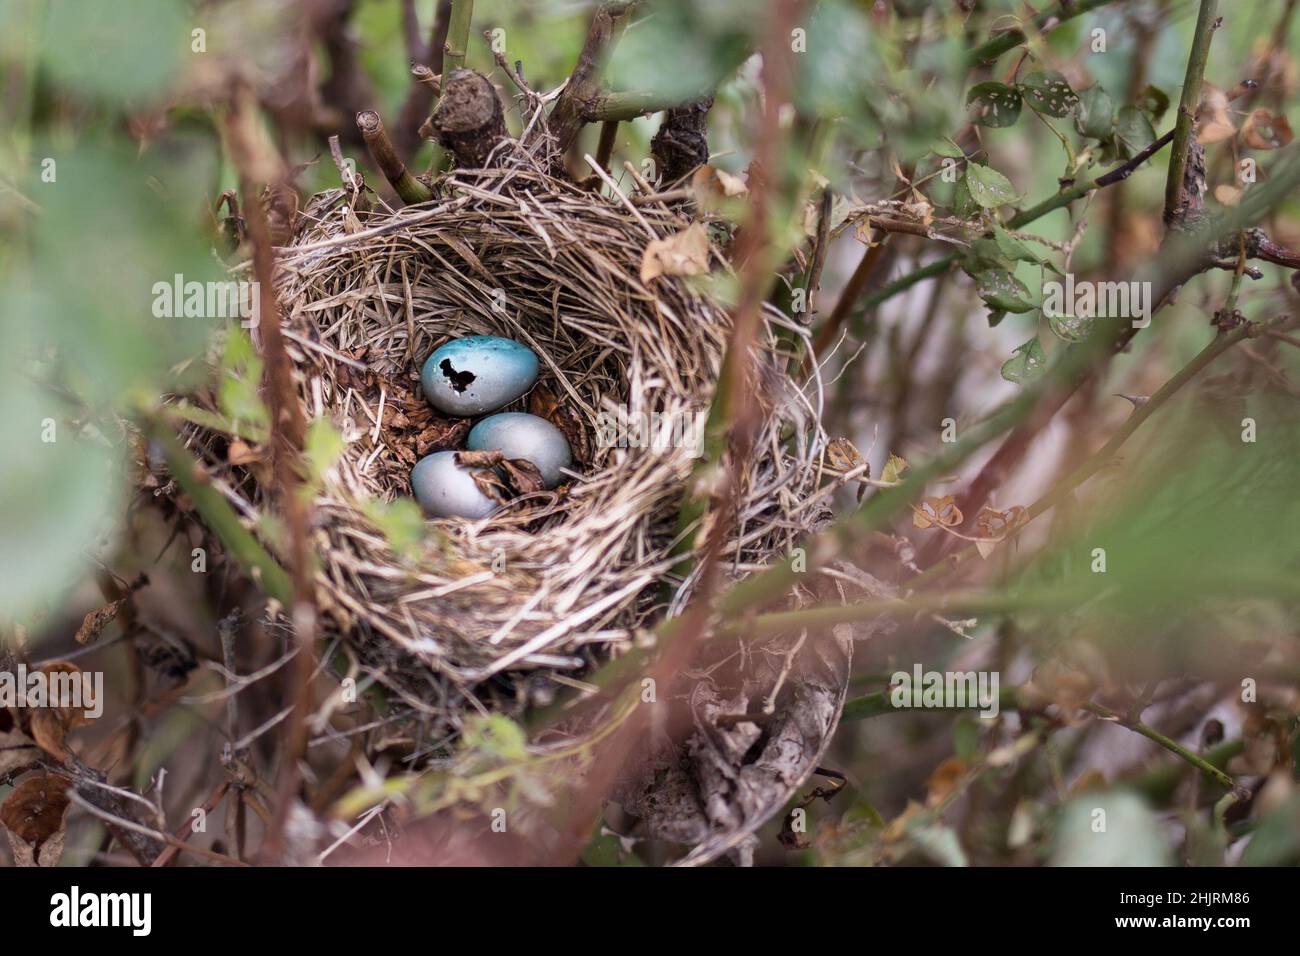 Camminando attraverso il giardino e notato questo nido abbandonato del robin con alcune uova rimanenti. Foto Stock